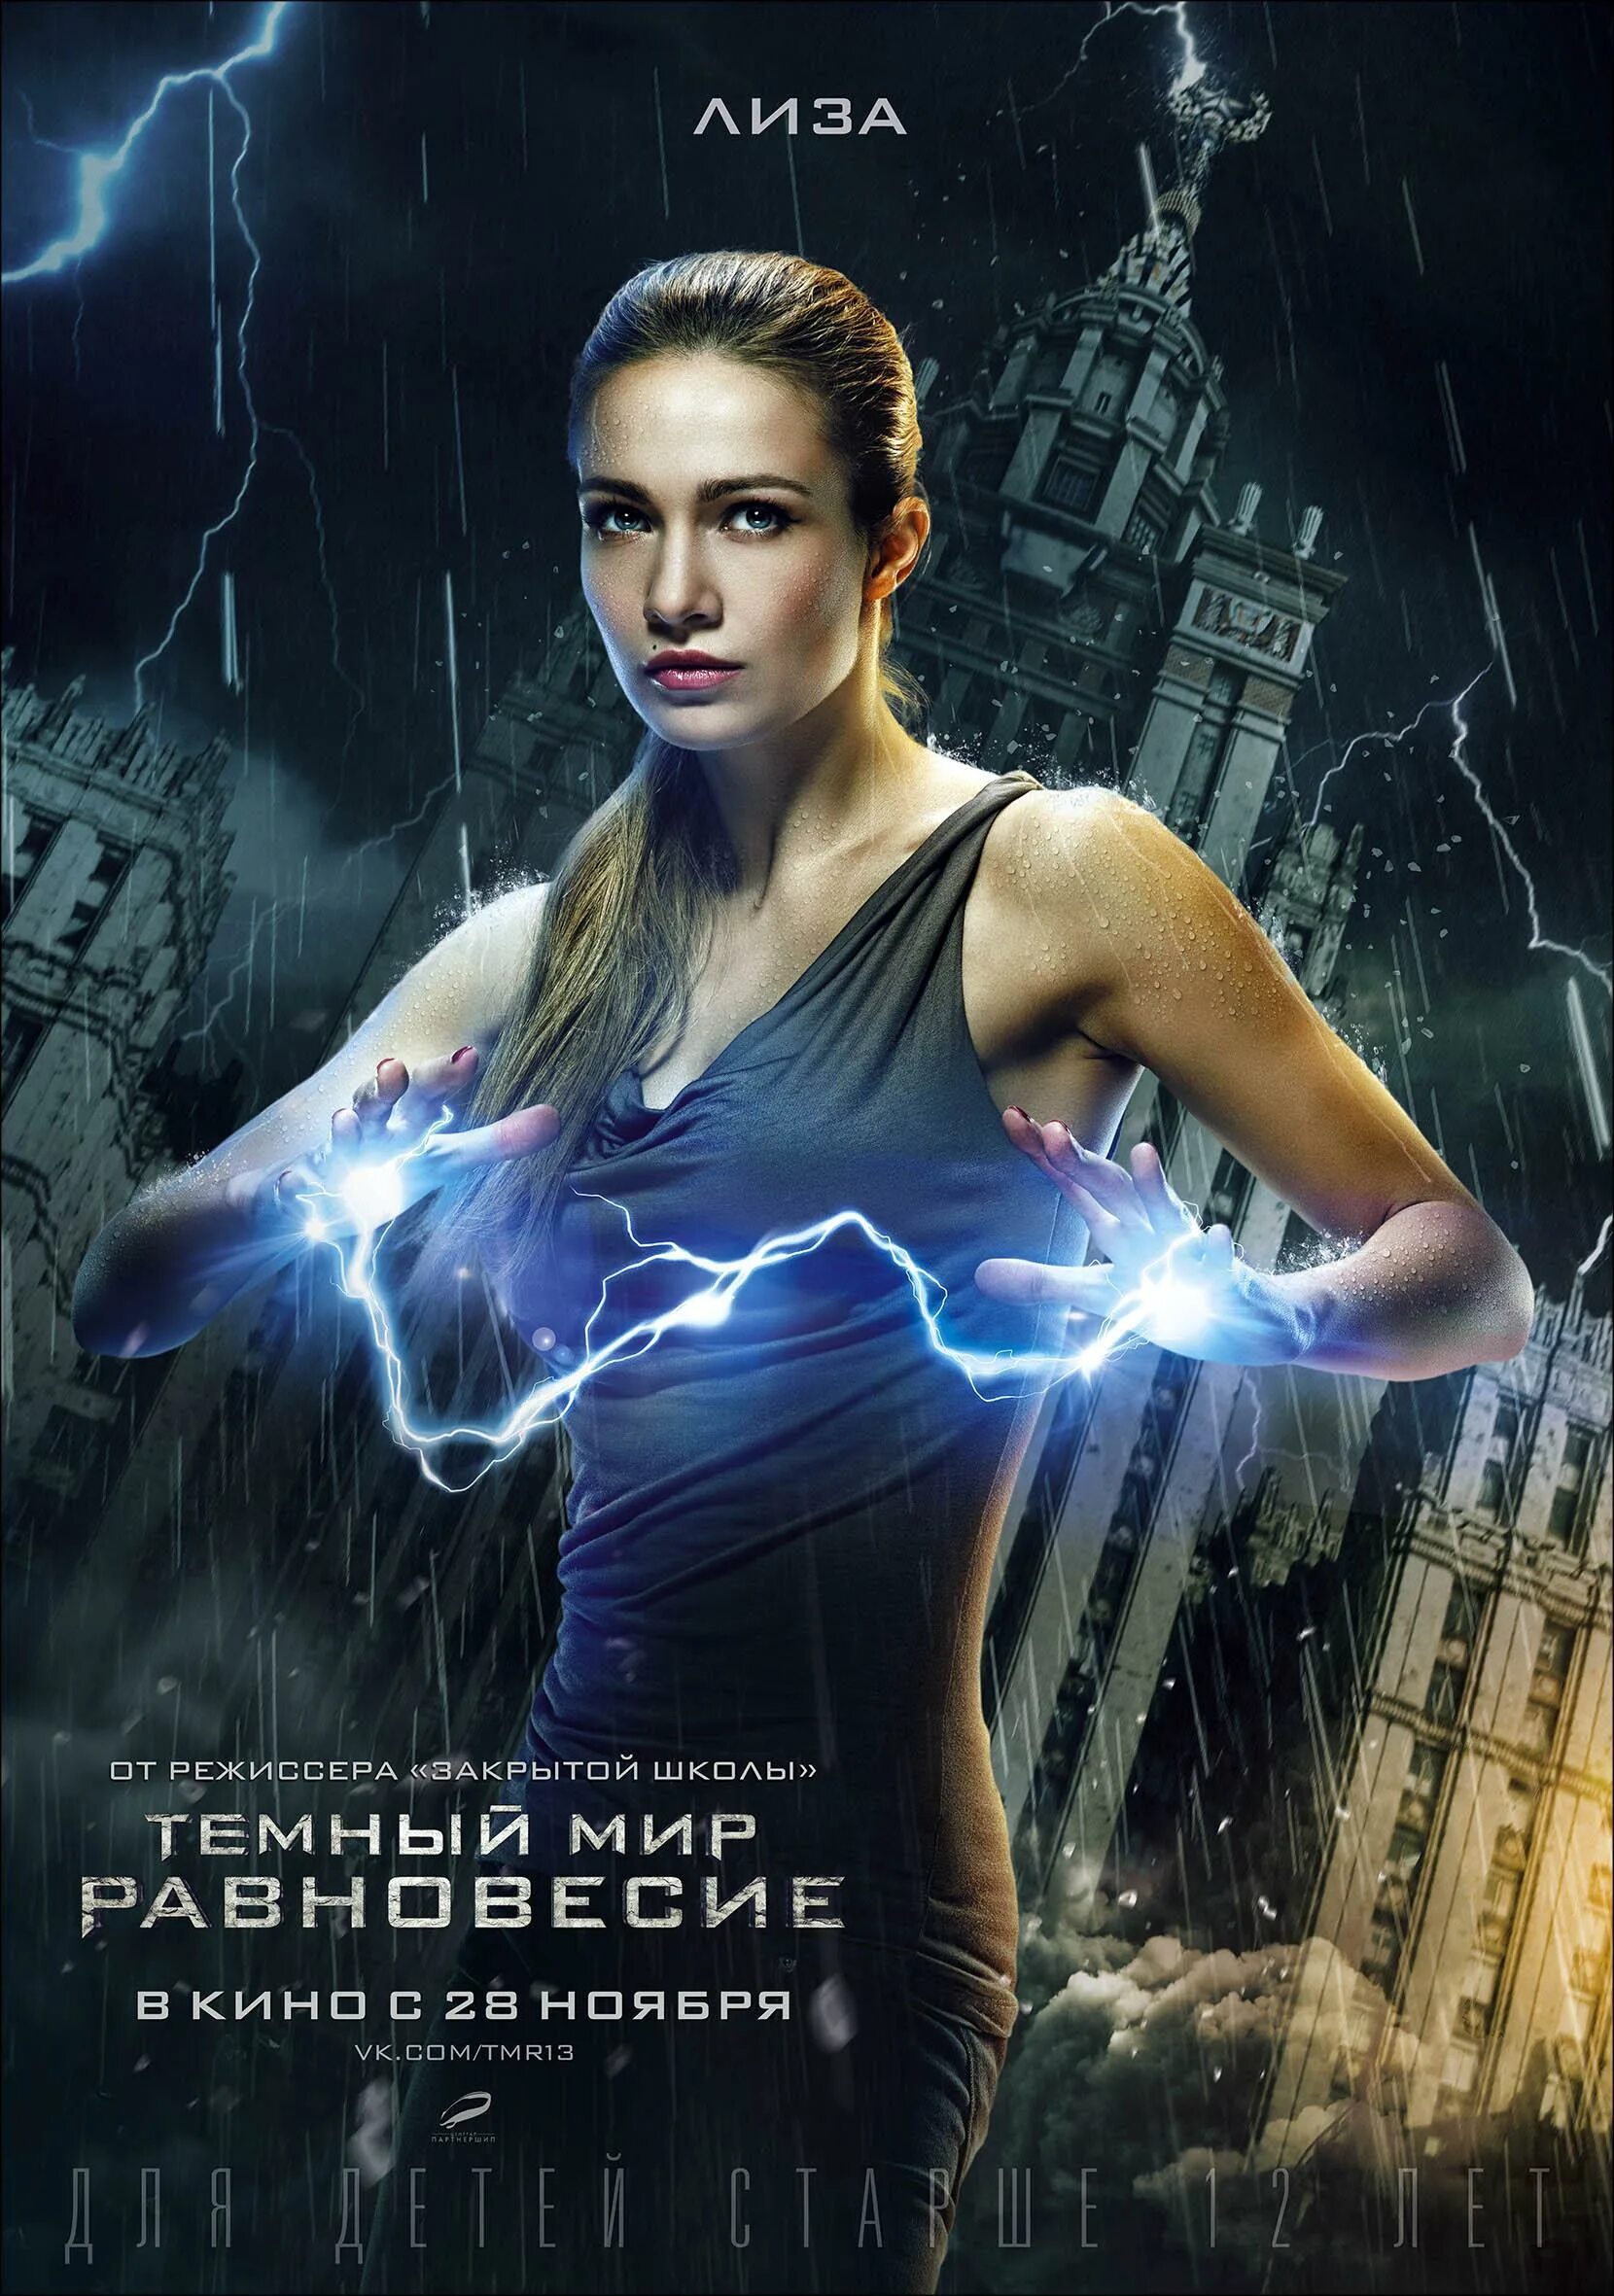 Русской фантастика 2. Тёмный мир: равновесие (2013). Тёмный мир равновесие 2.